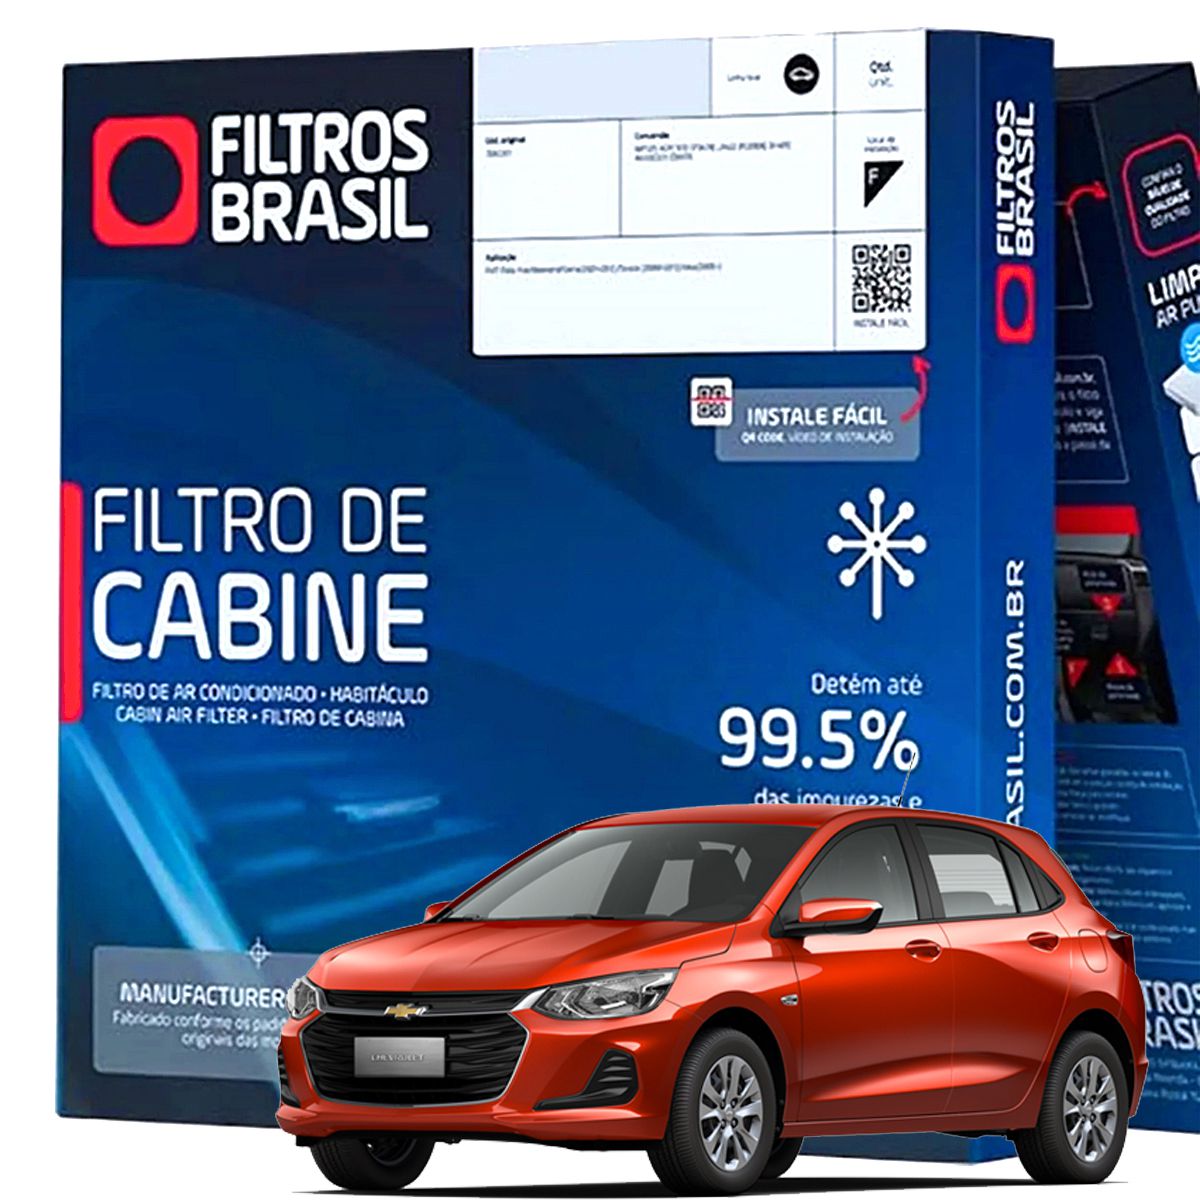 Filtro De Ar Condicionado Cabine Filtros Brasil Gm Chevrolet Onix Plus -  Peças Automotivas, Casa e Garagem - Itália Ricambi